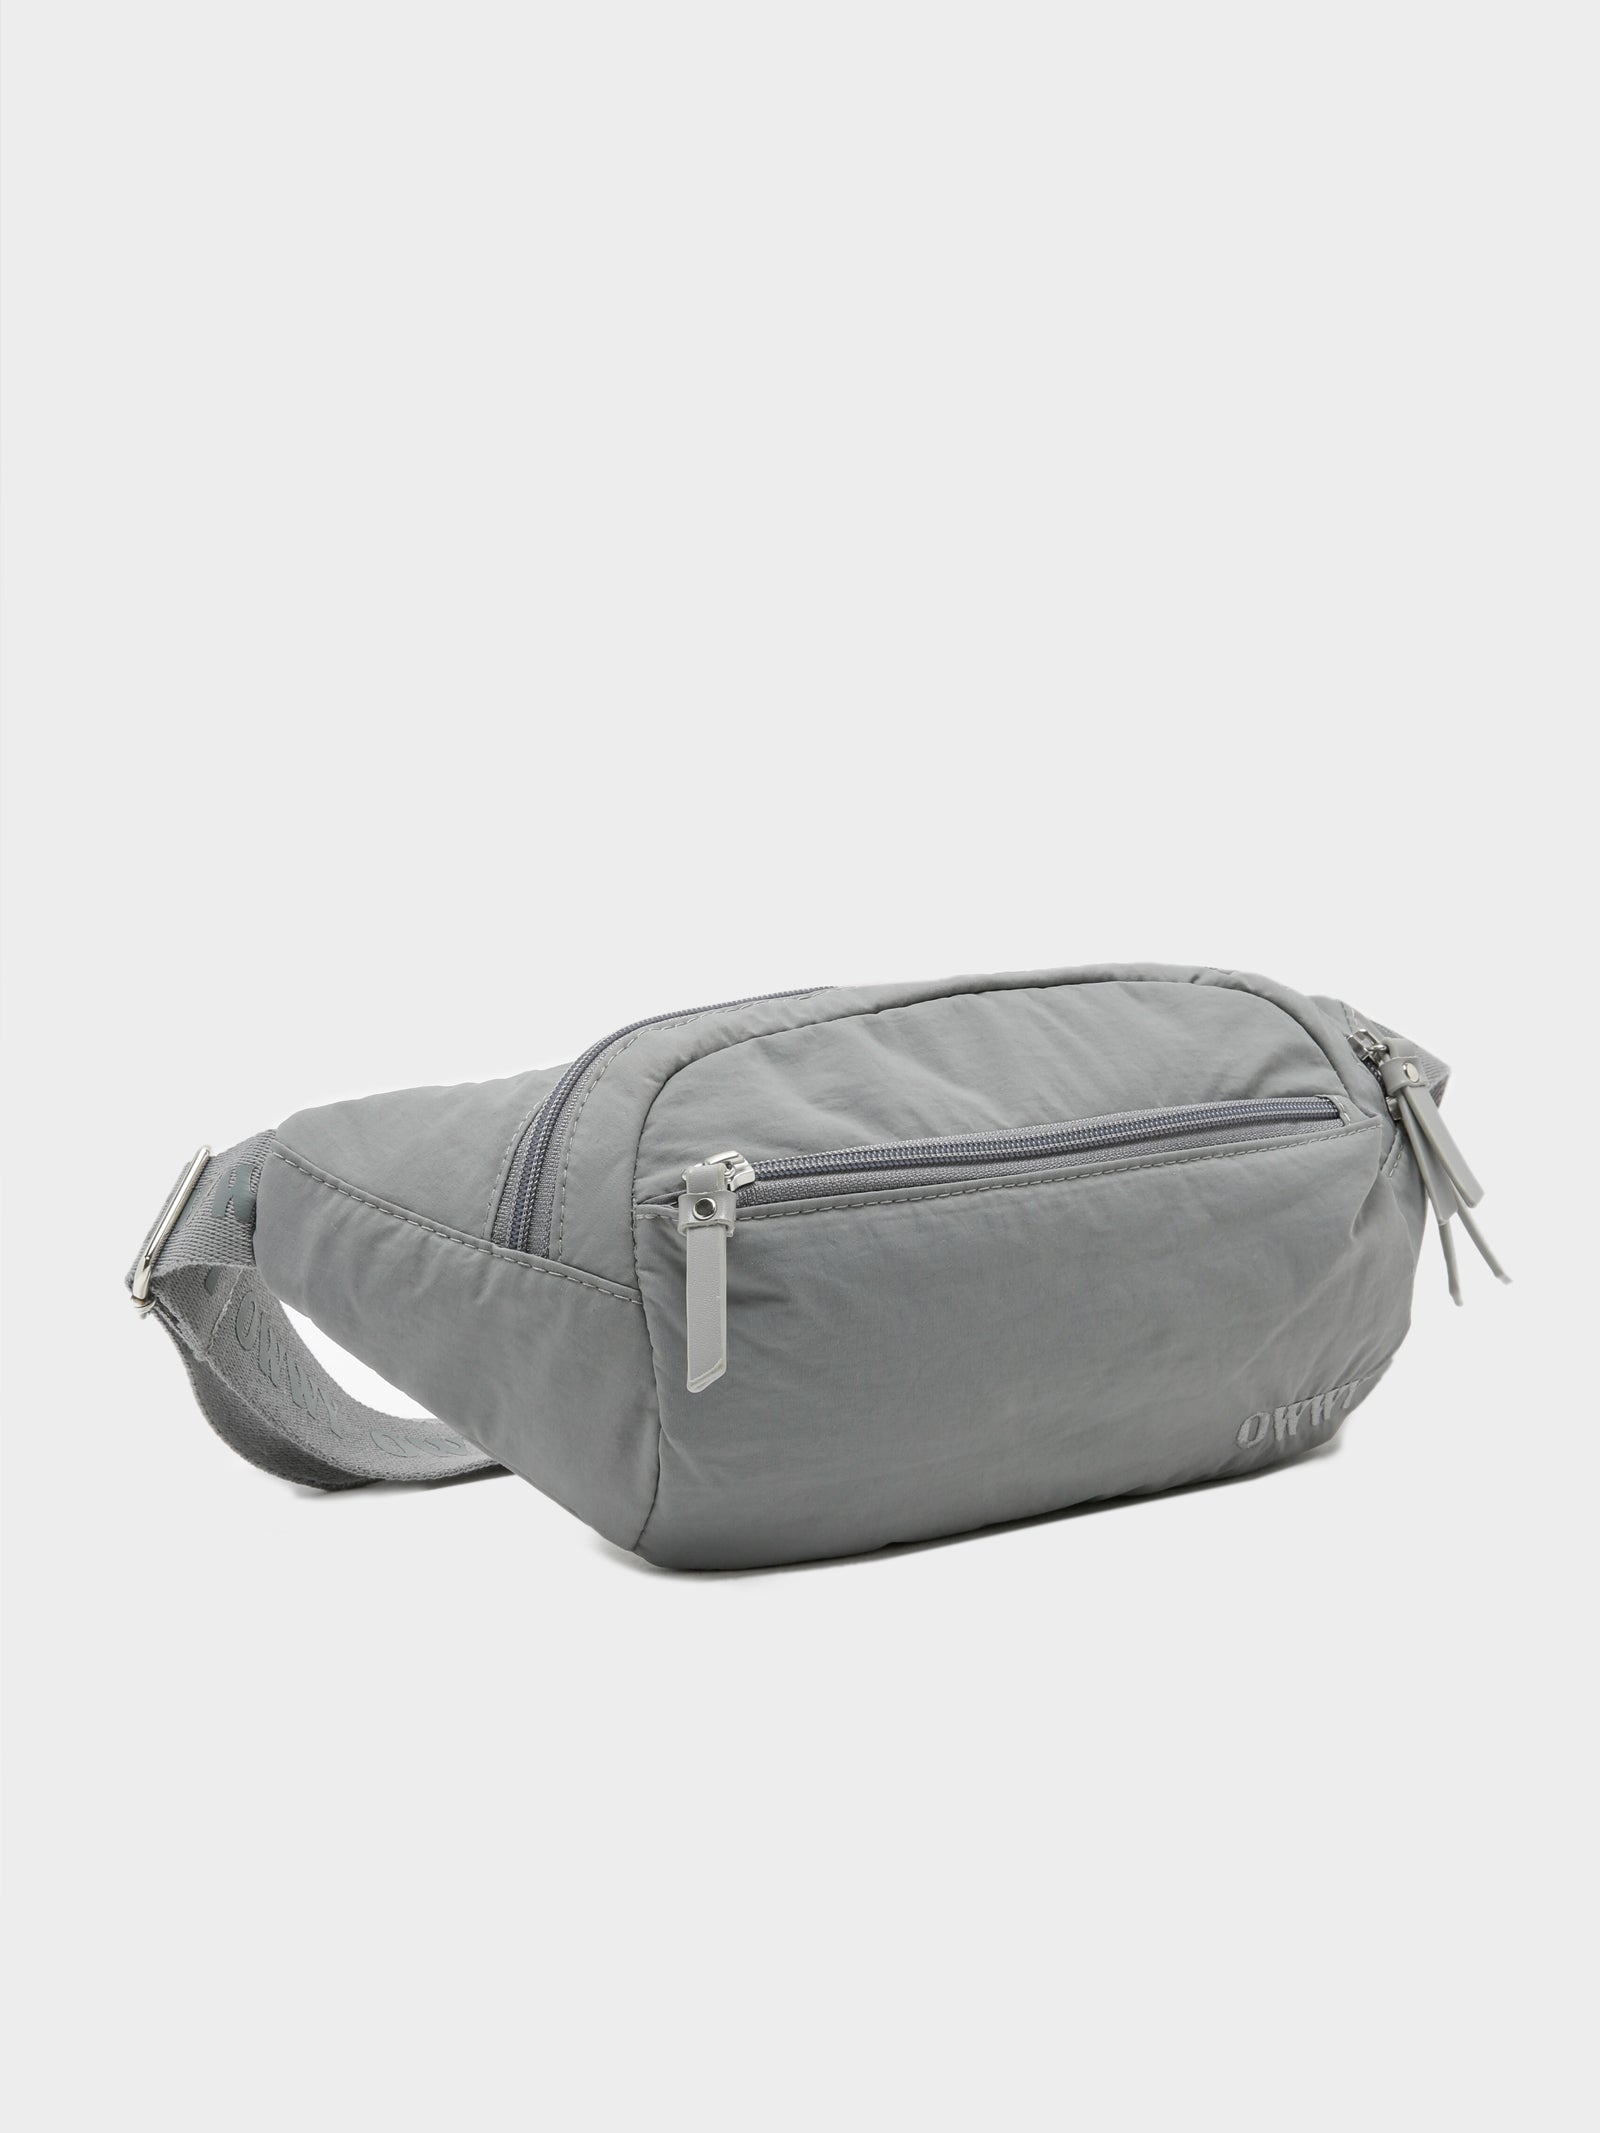 OWWY Belt Bag in Grey